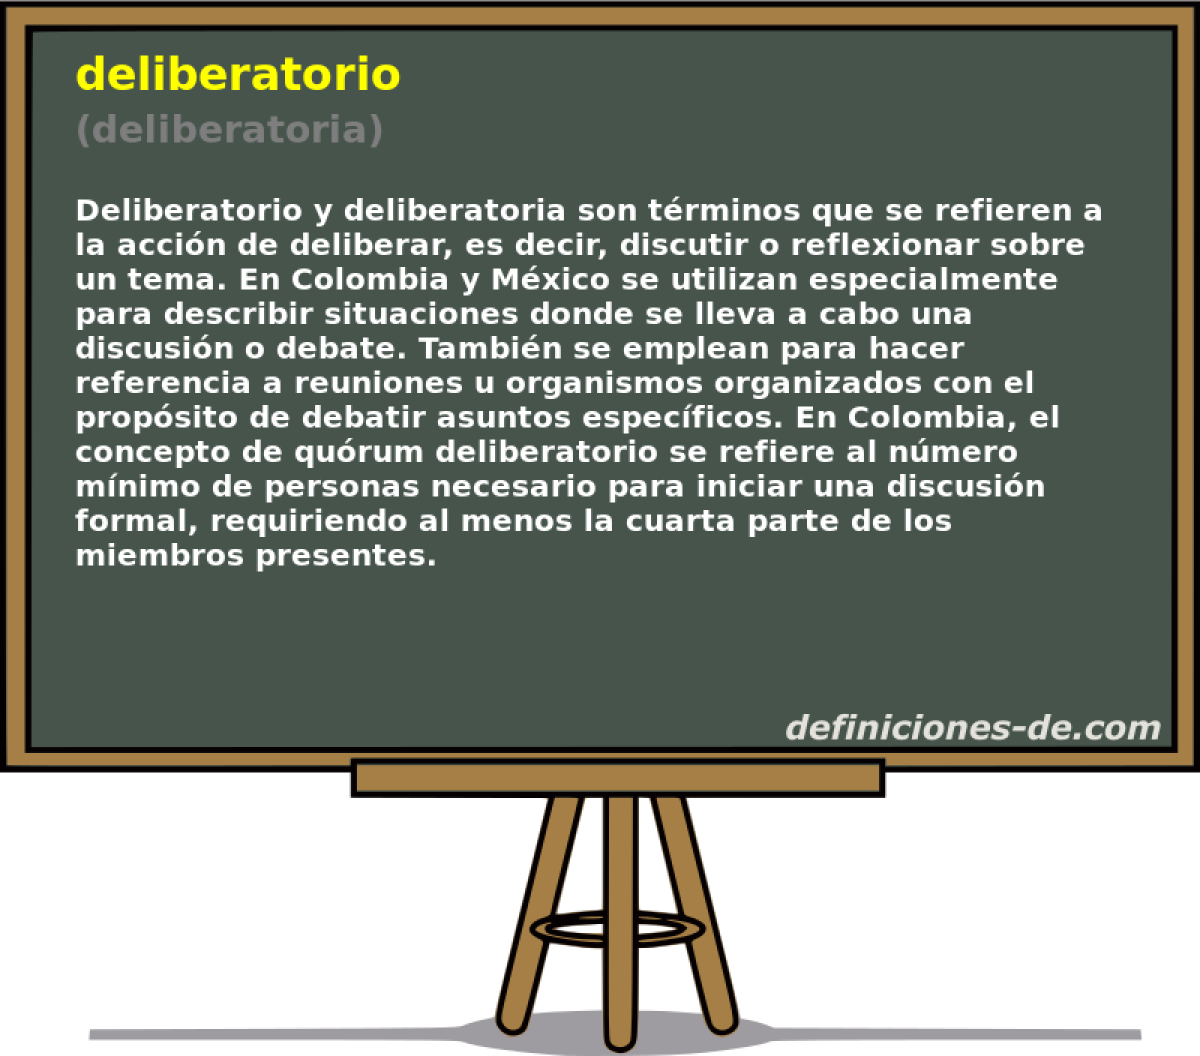 deliberatorio (deliberatoria)